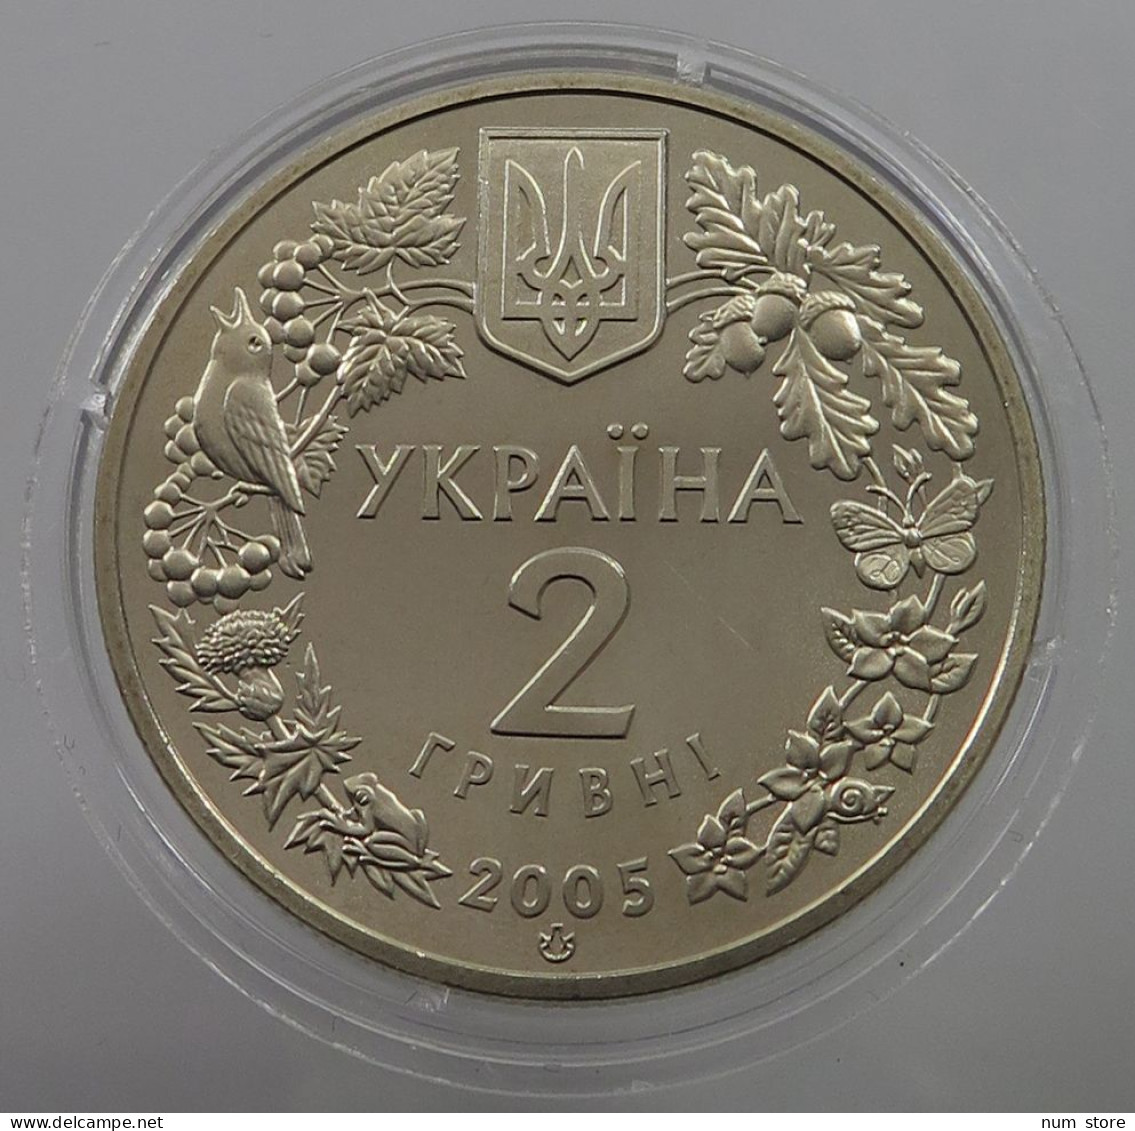 UKRAINE 2 HRYVNI 2005  #w033 0333 - Ukraine